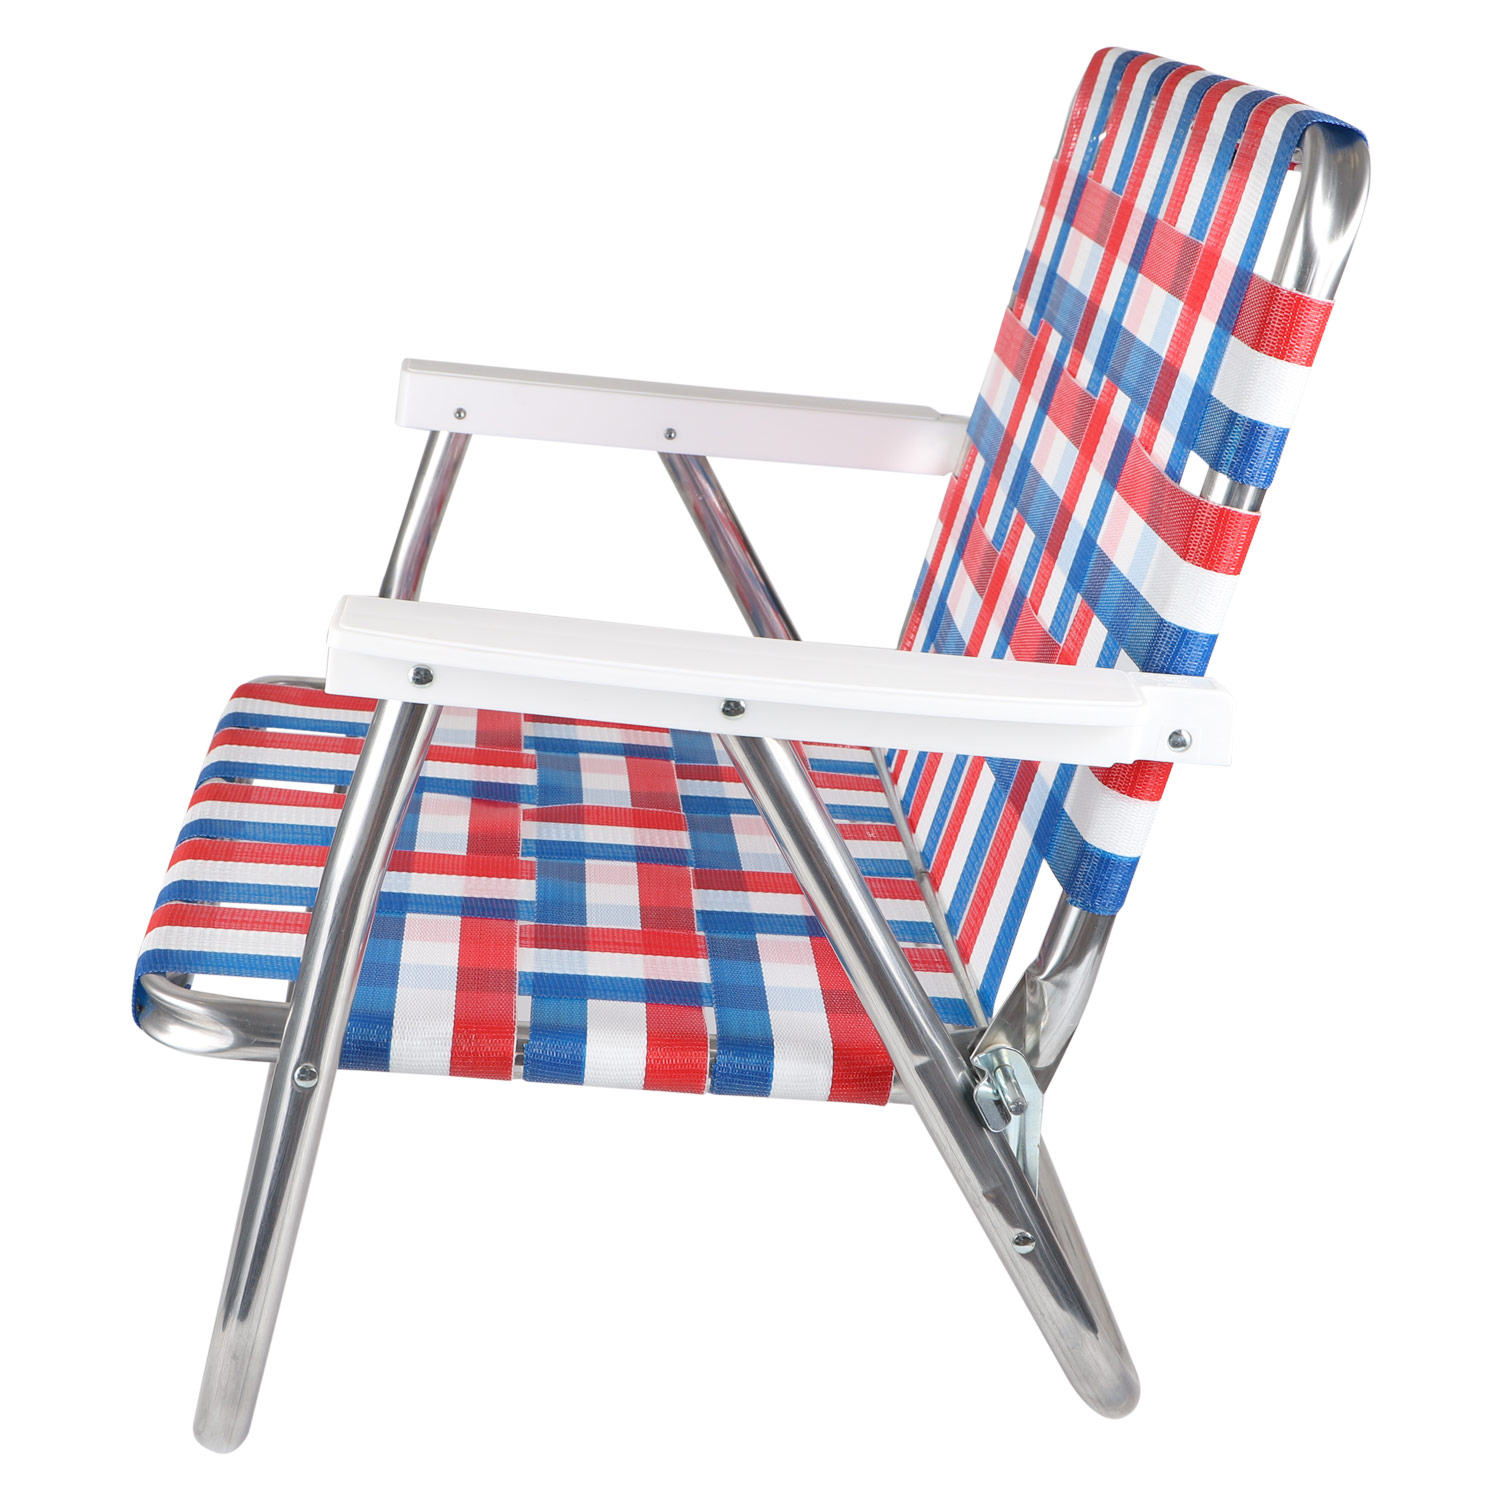 もございま Lawn Chair ローンチェア アウトドアチェア アームチェア 椅子 軽量 折りたたみ コンパクト ロー バック ビーチ チェア Low Back Beach Chair Buw2525 シュガーオンラインショップ によりサイ Shineray Com Br